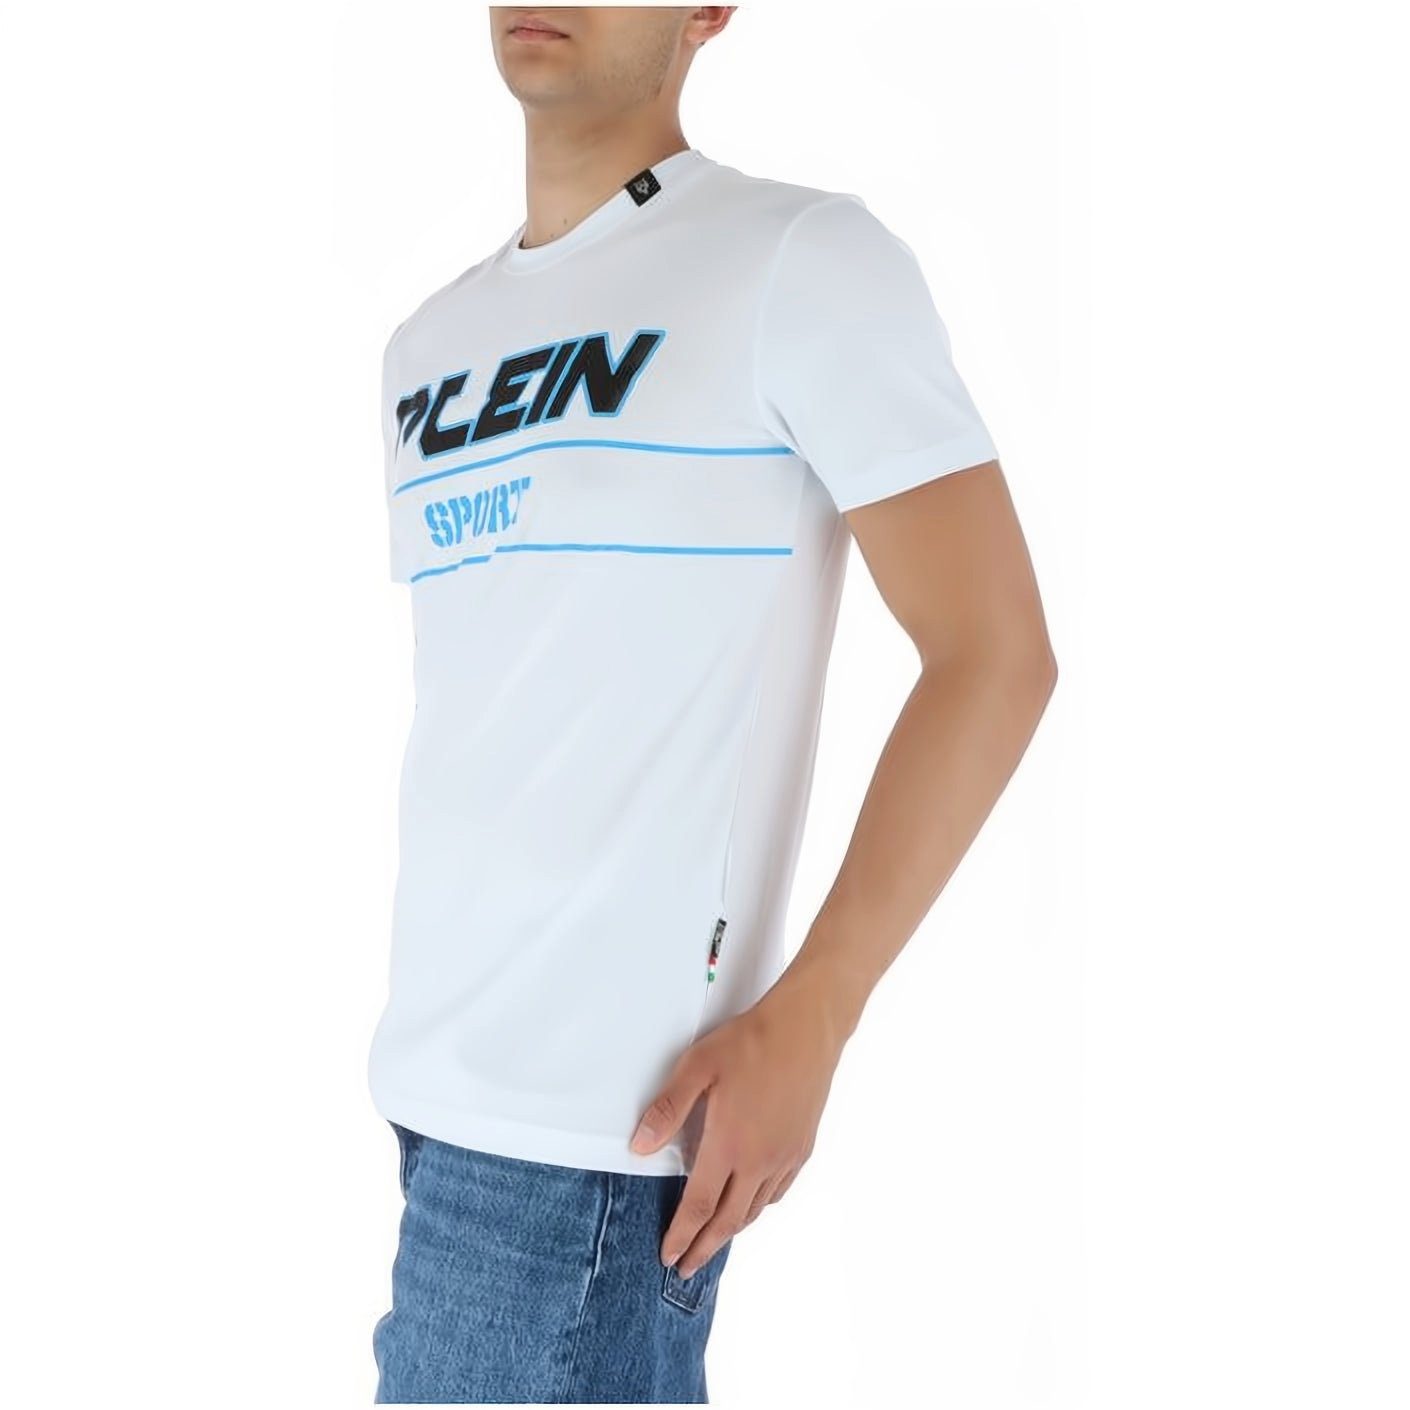 Tragekomfort, vielfältige SPORT ROUND PLEIN Farbauswahl T-Shirt Look, Stylischer hoher NECK